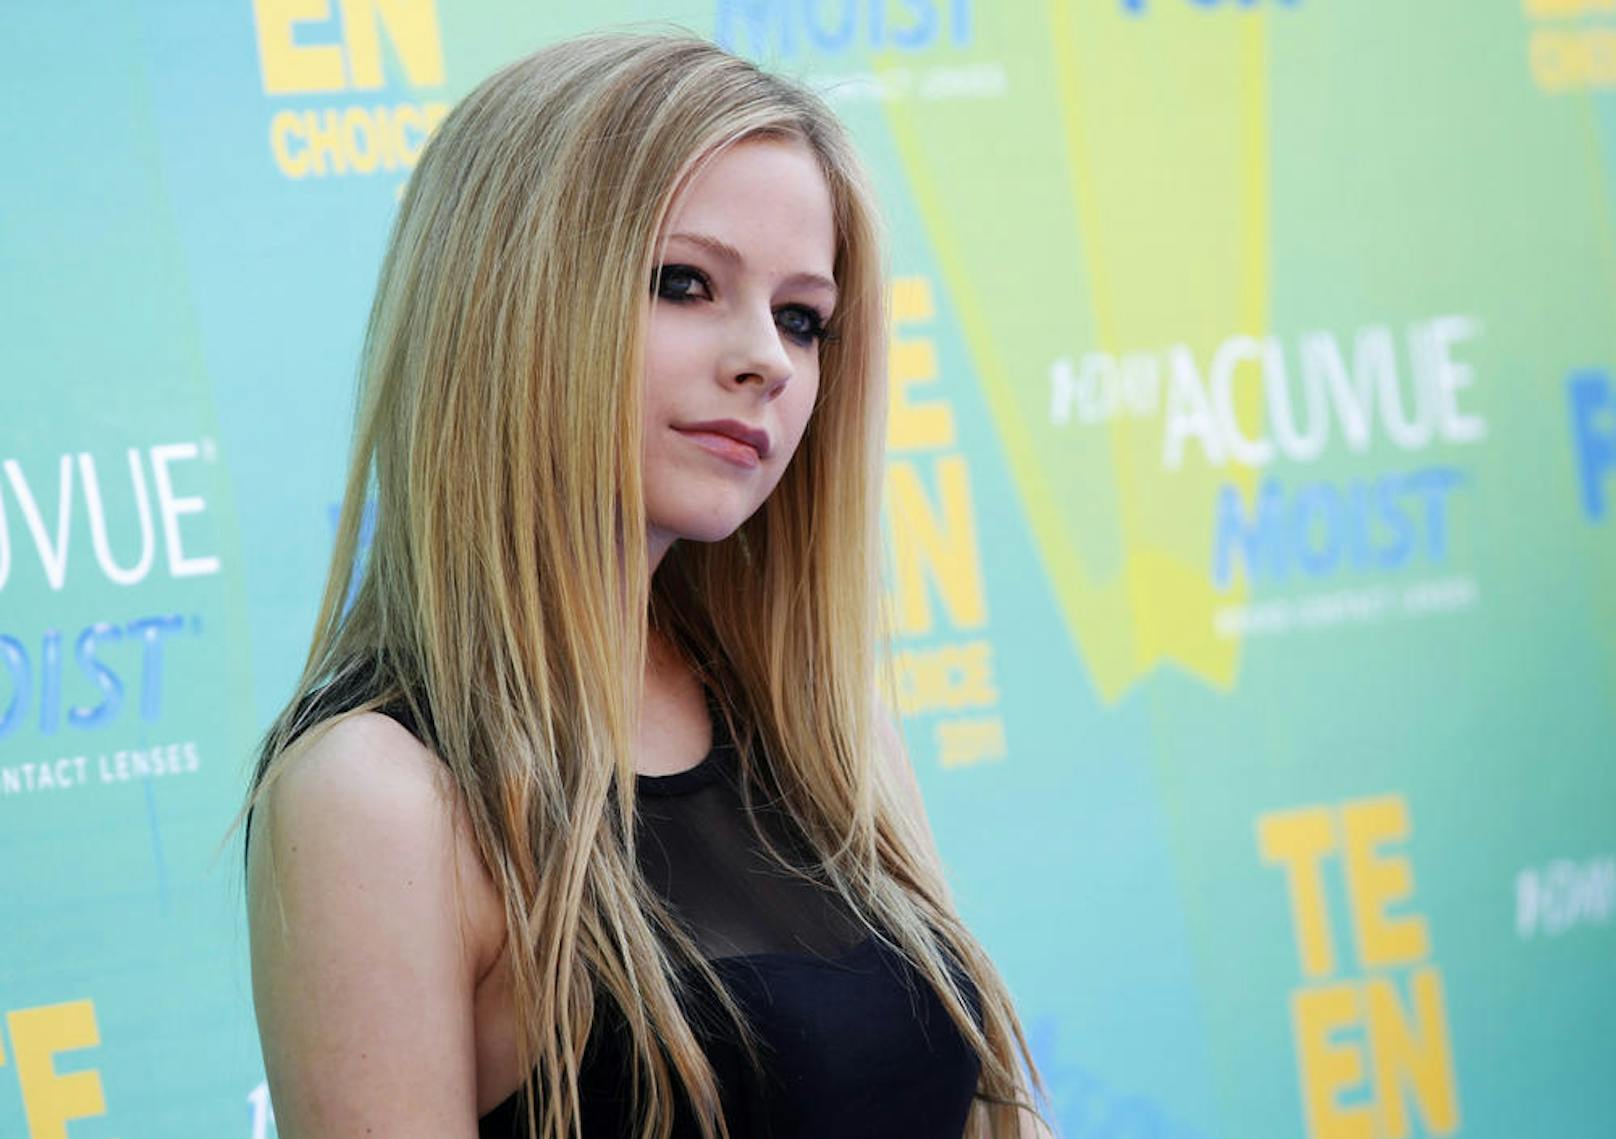 ... US-Sängerin Avril Lavigne. Sie feiert im September ihren 36. Geburtstag.